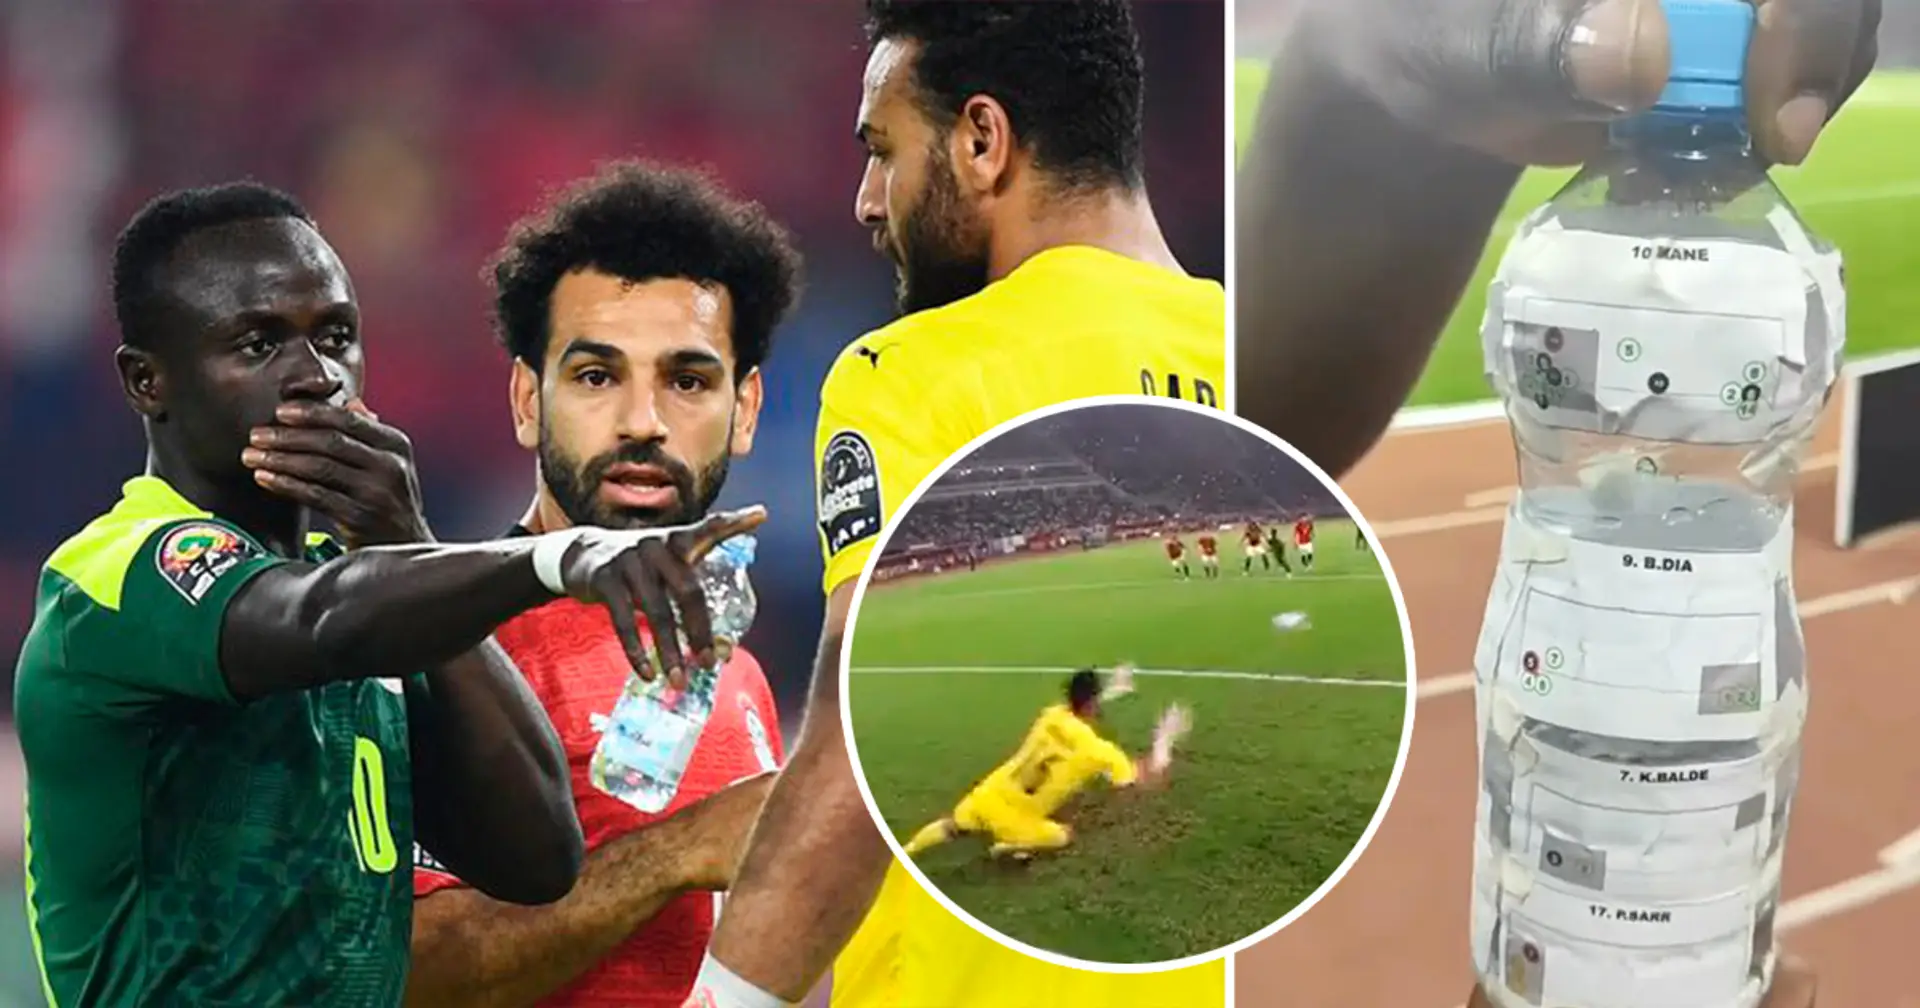 Le gardien égyptien a oublié sa bouteille après la finale de la CAN, il y a des infos sur les tireurs de penalty du Sénégal